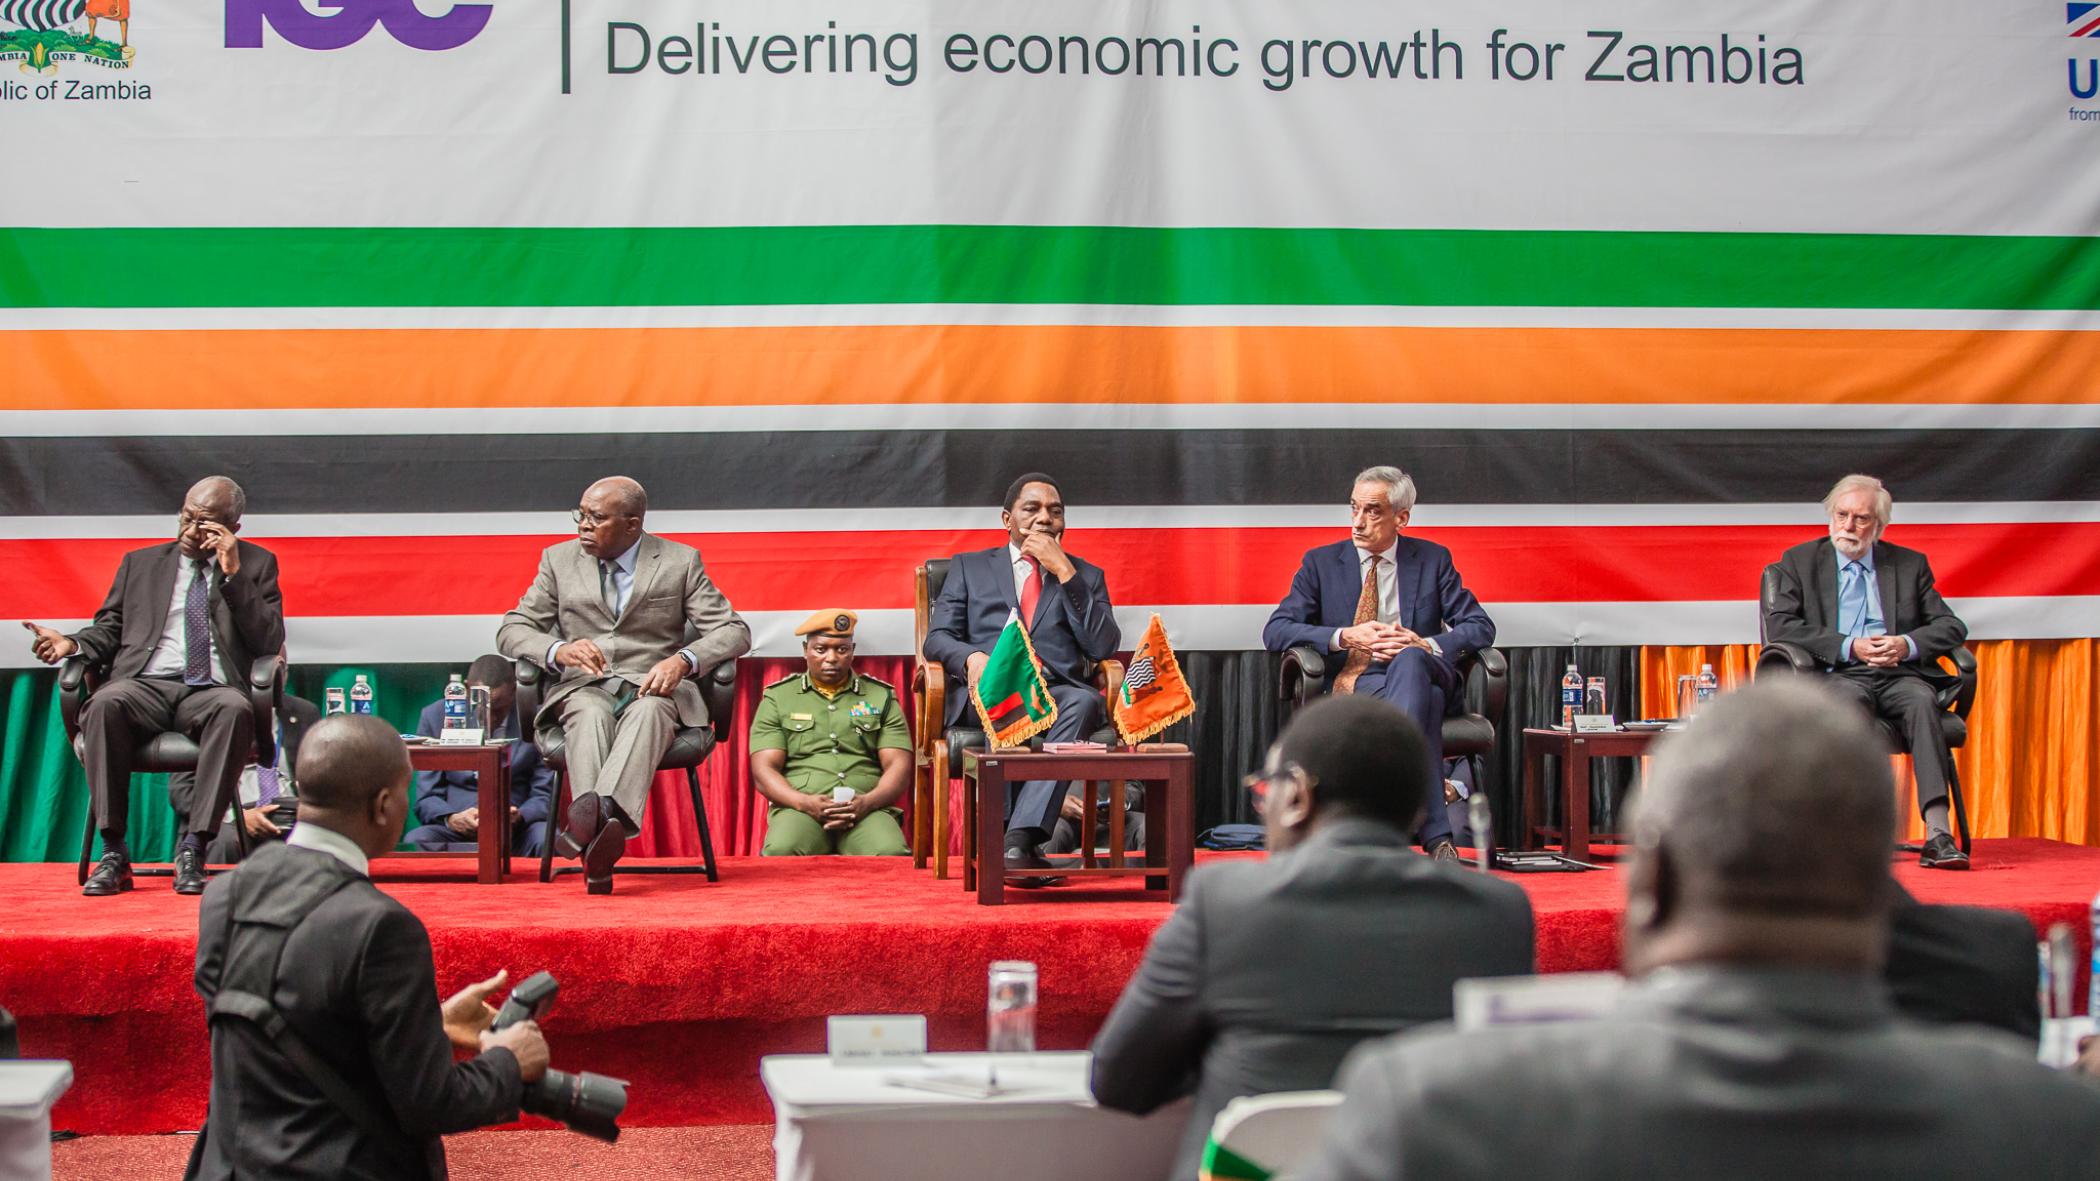 Zambia Economic Growth Forum 2022